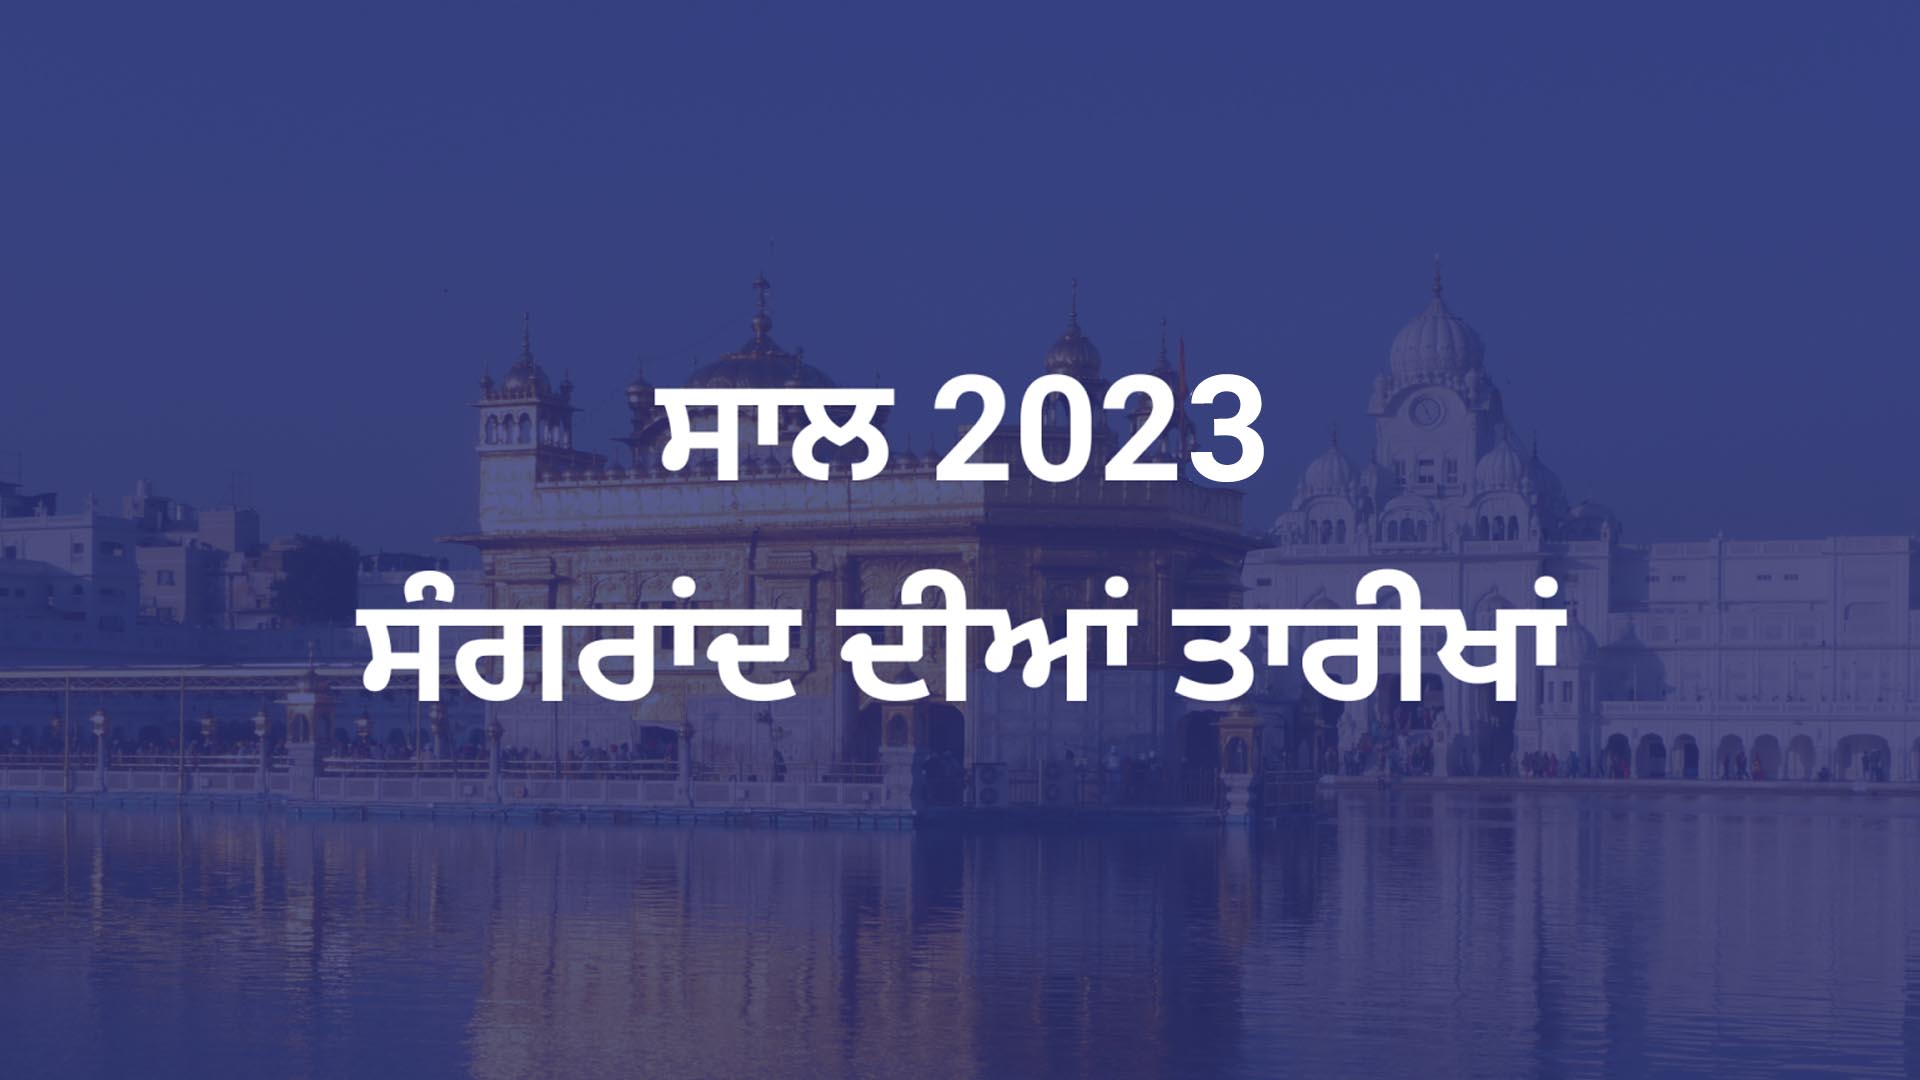 Puranmashi Dates 2023